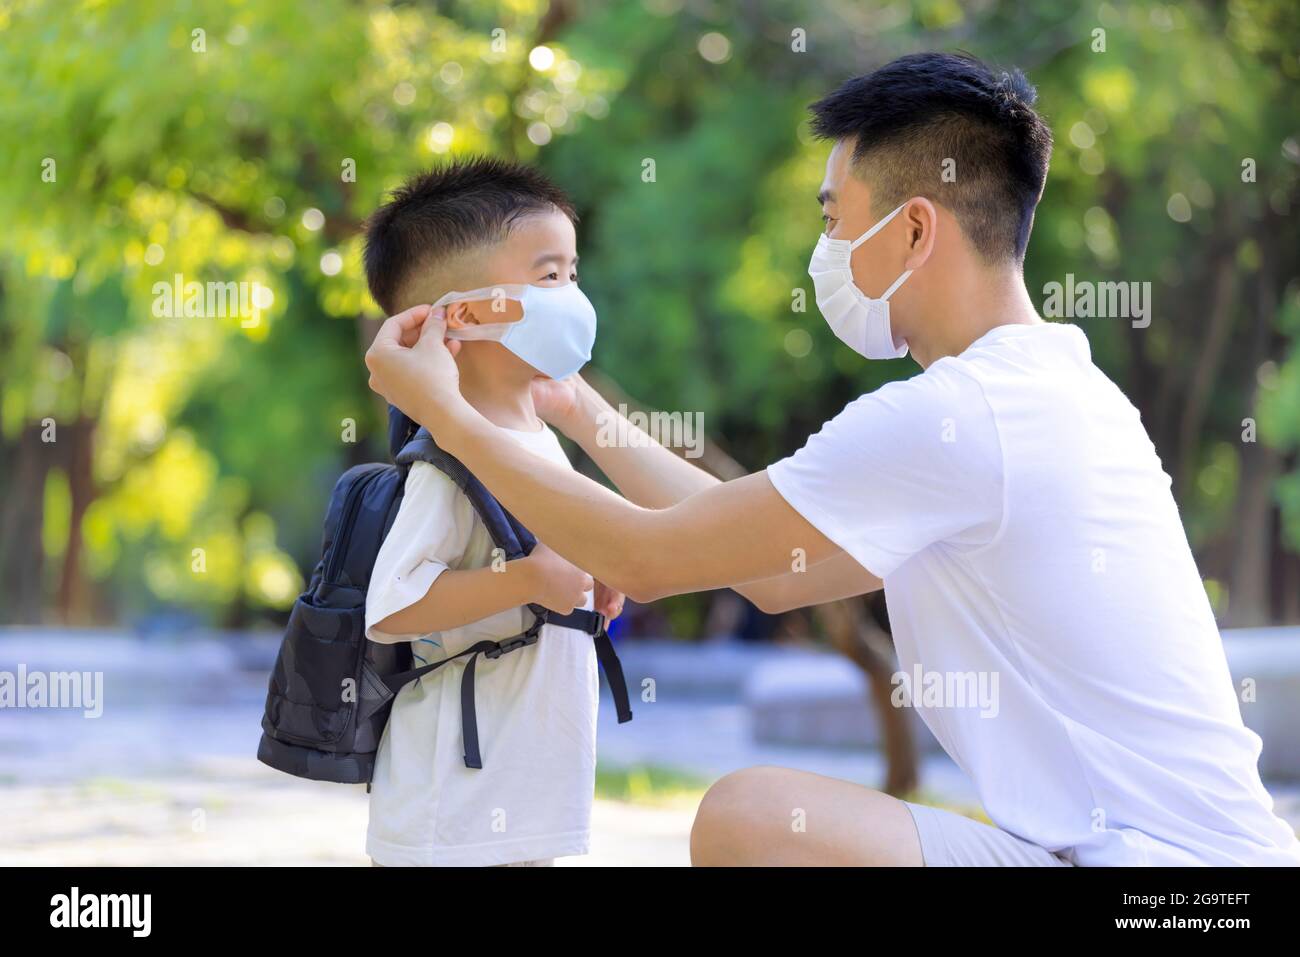 Le père aide son fils à porter un masque médical pour la protection Covid-19 Banque D'Images